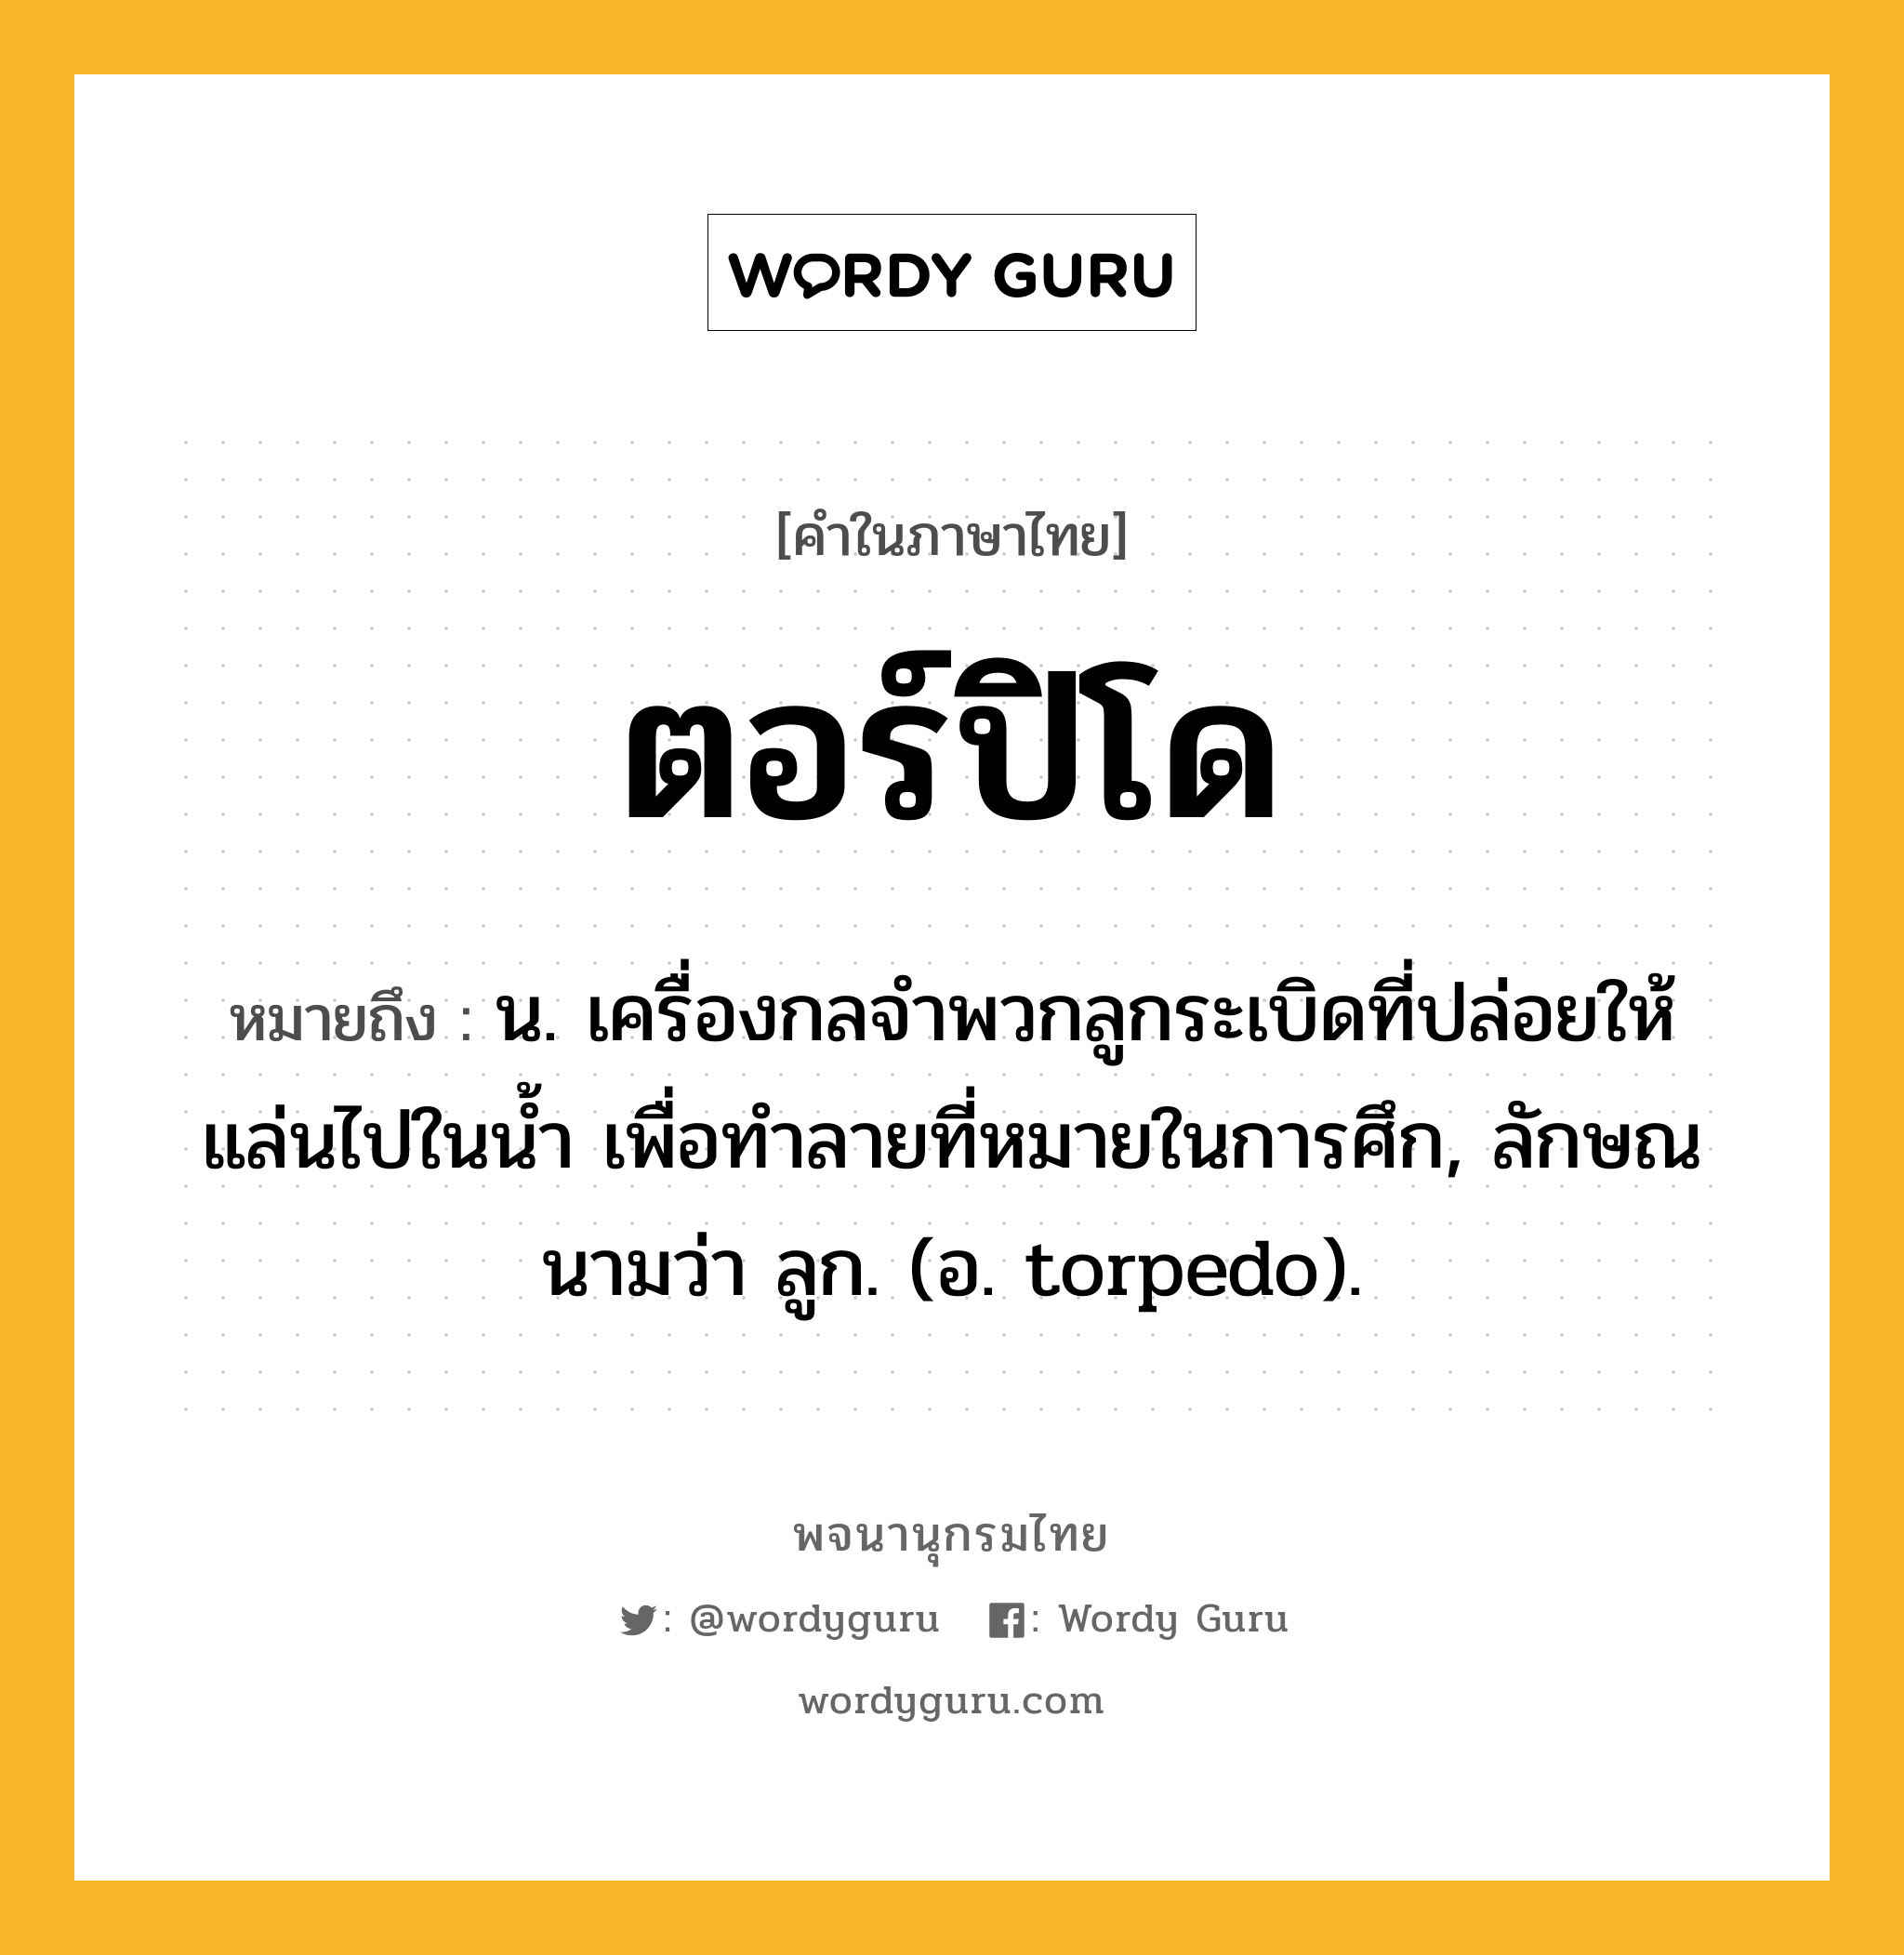 ตอร์ปิโด หมายถึงอะไร?, คำในภาษาไทย ตอร์ปิโด หมายถึง น. เครื่องกลจําพวกลูกระเบิดที่ปล่อยให้แล่นไปในนํ้า เพื่อทําลายที่หมายในการศึก, ลักษณนามว่า ลูก. (อ. torpedo).